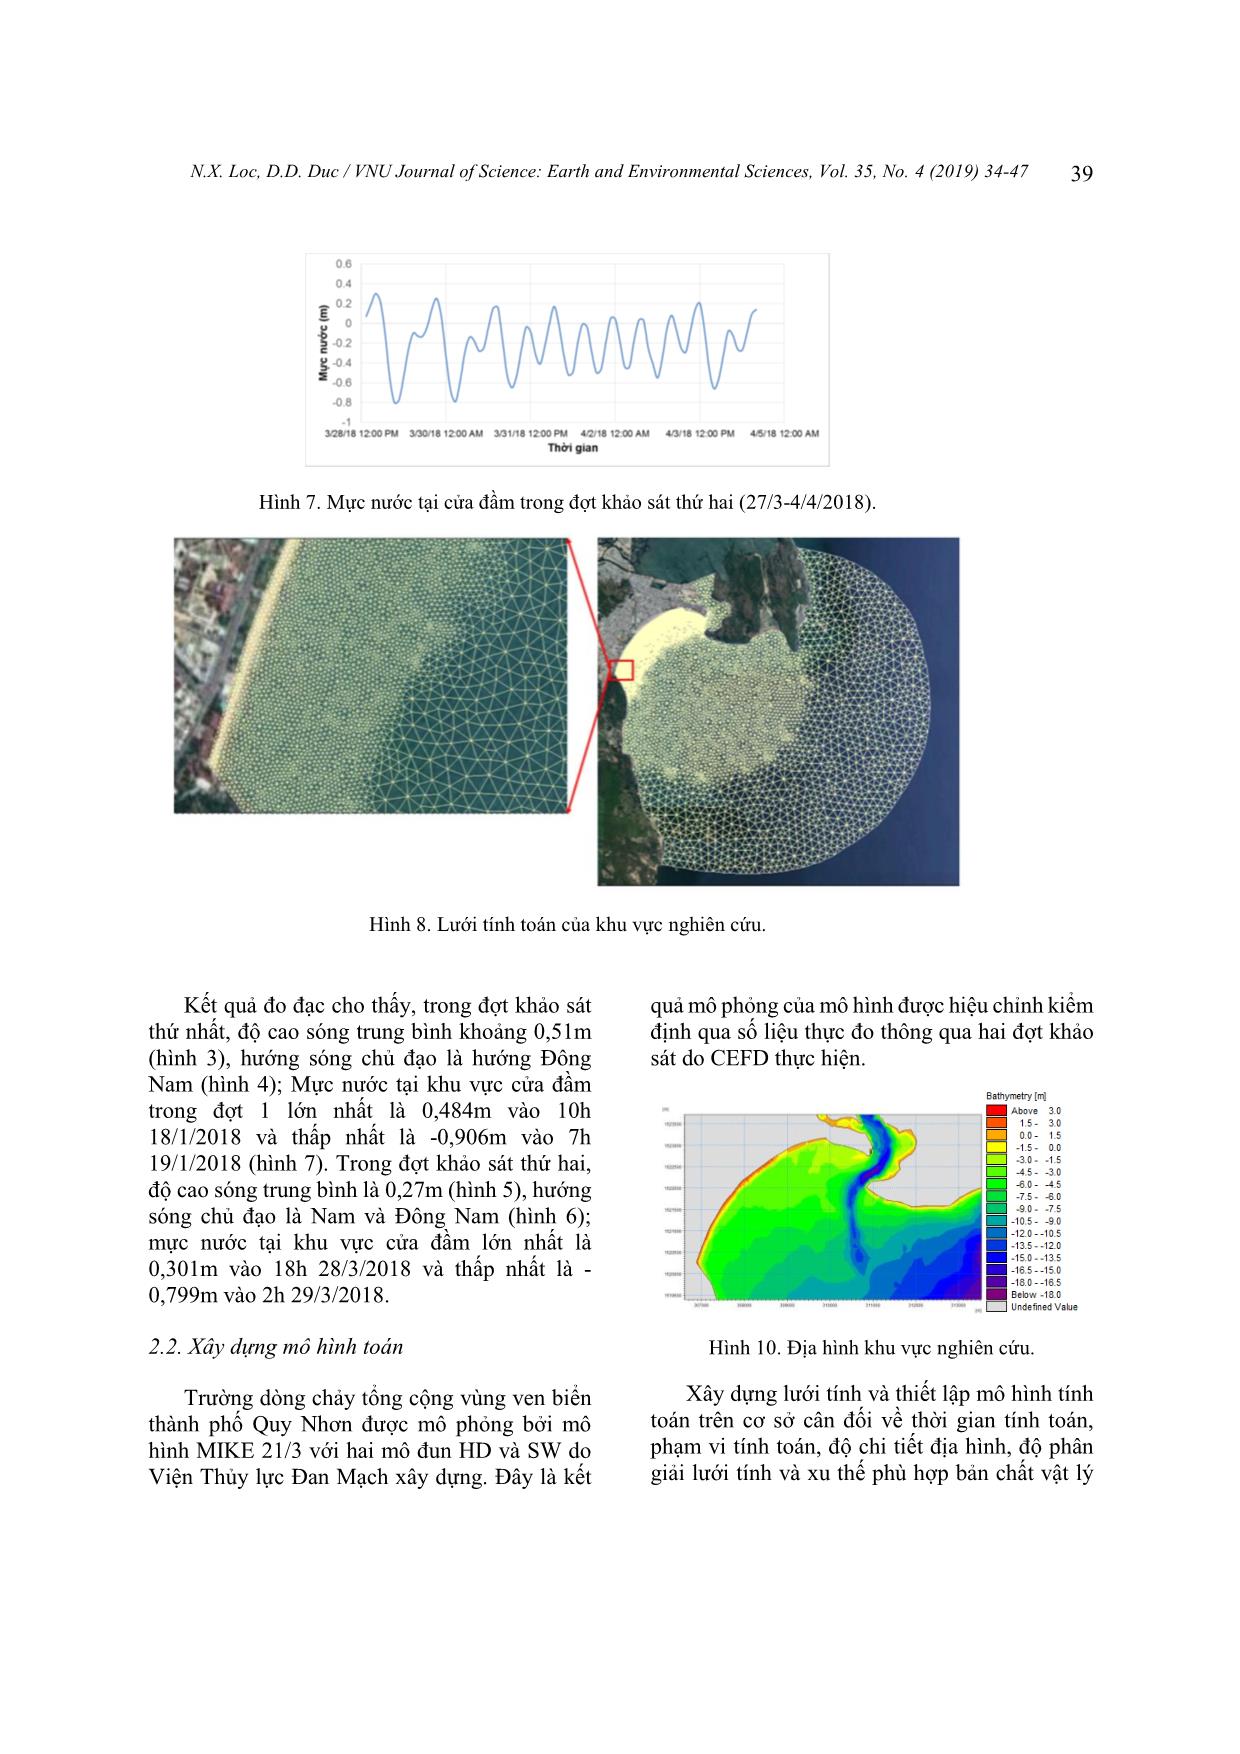 Đánh giá khả năng xuất hiện dòng tách bờ tại khu vực bãi biển Quy Nhơn, Bình Định trang 6